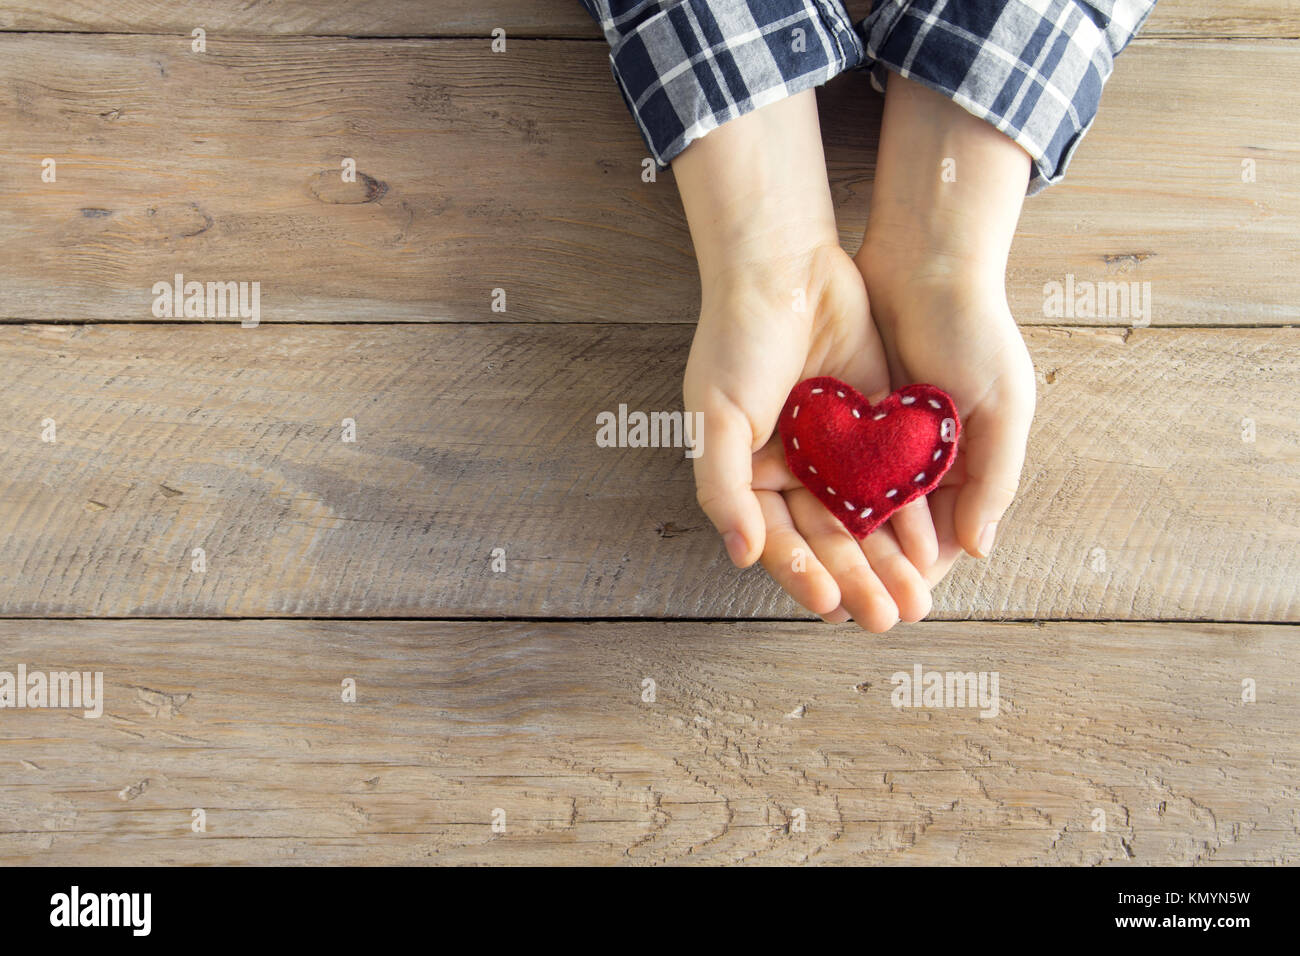 Rotes Herz in Kind Hände über Holz- Hintergrund, kopieren. Güte, Liebe und Nächstenliebe Konzept, hand made Valentinstag Geschenk. Stockfoto